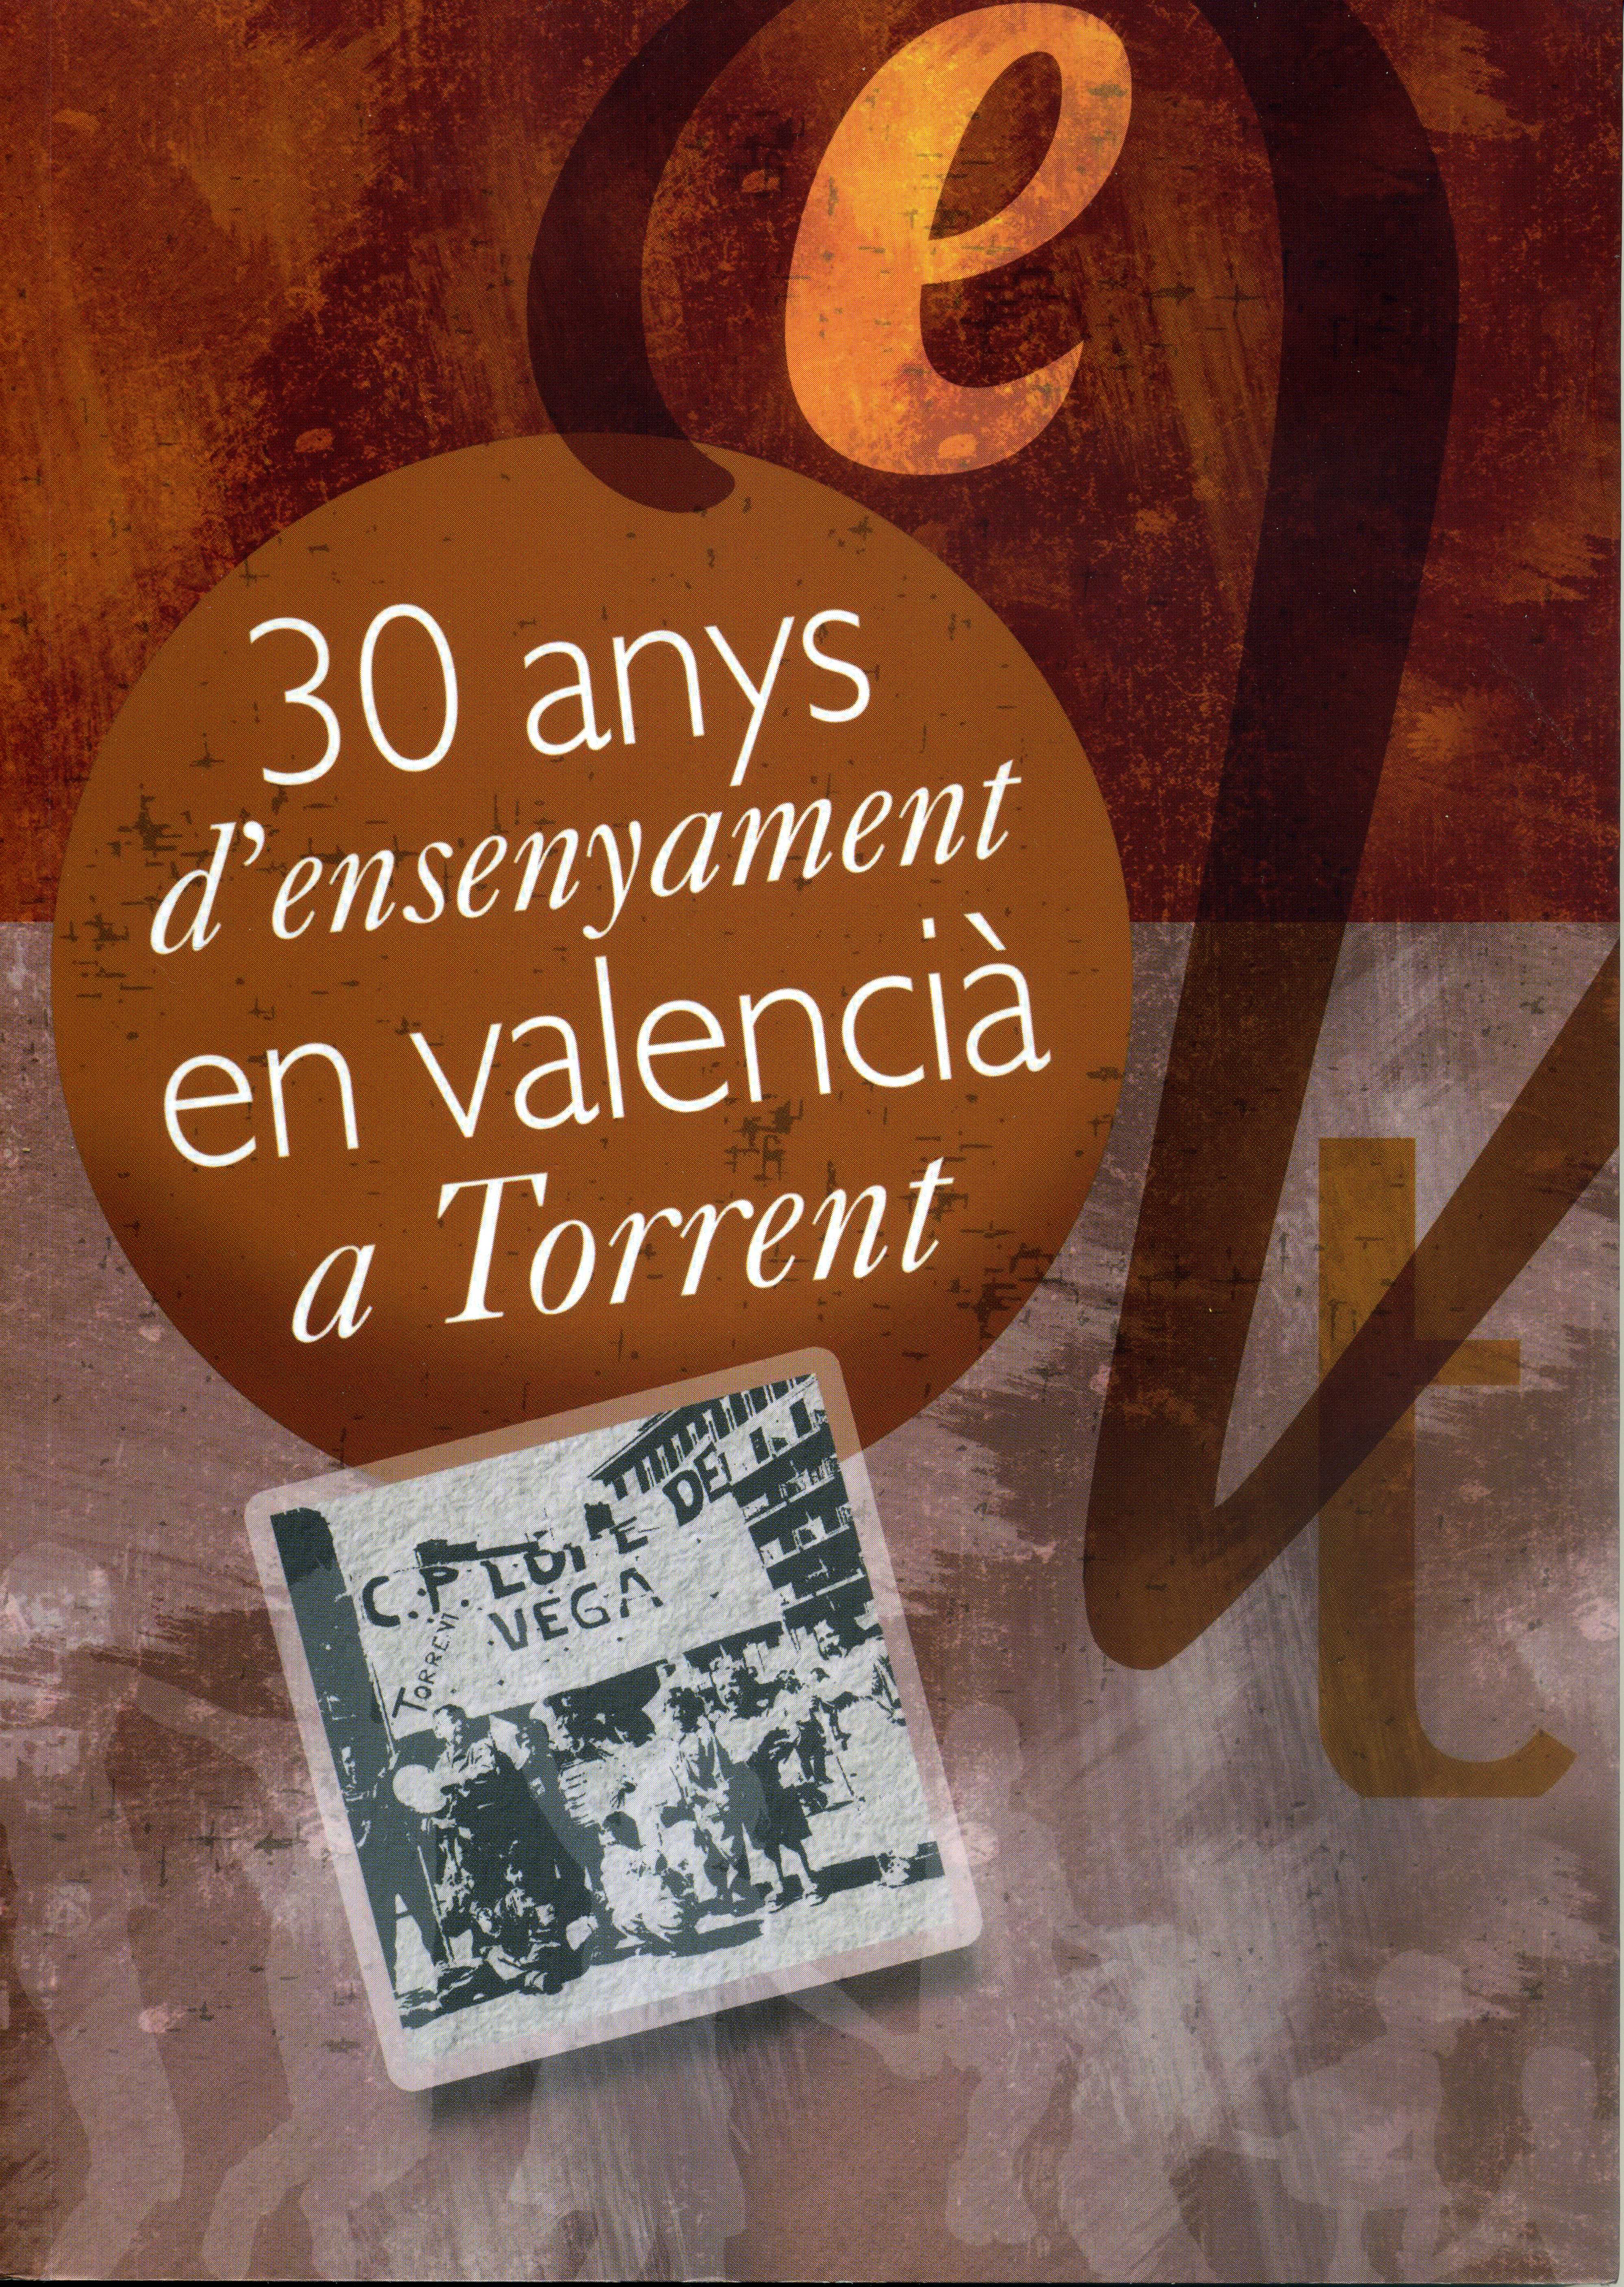 30 anys d'ensenyament en valencià a Torrent